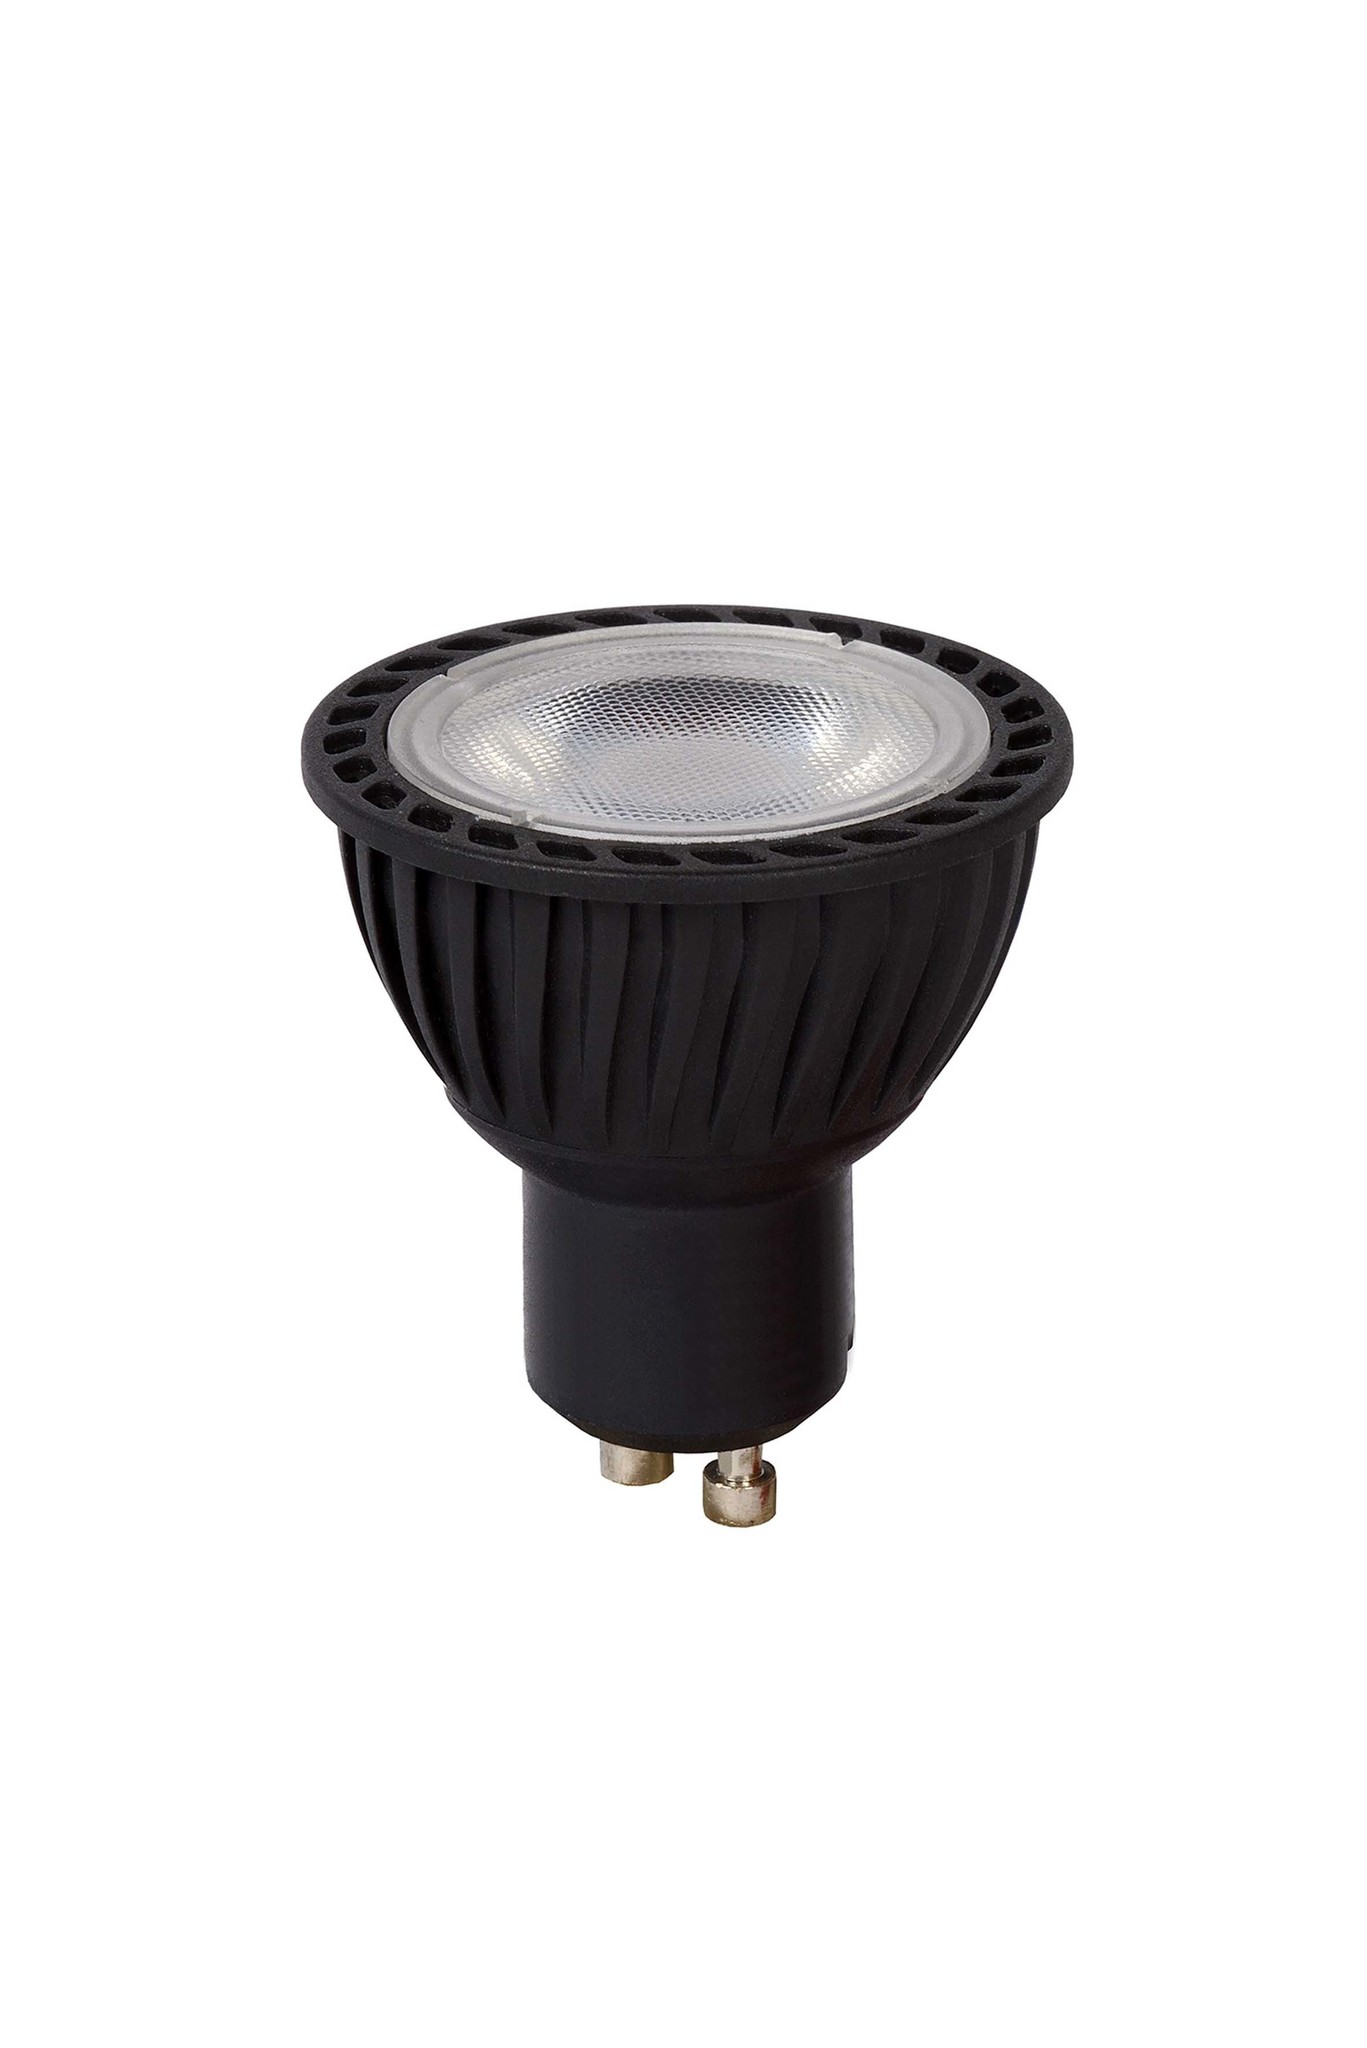 Sobriquette meten Gewond raken LED spot GU10 zwart dimbaar - 5W vervangt 30W - 3000K warm wit licht -  Ledlichtdiscounter.nl